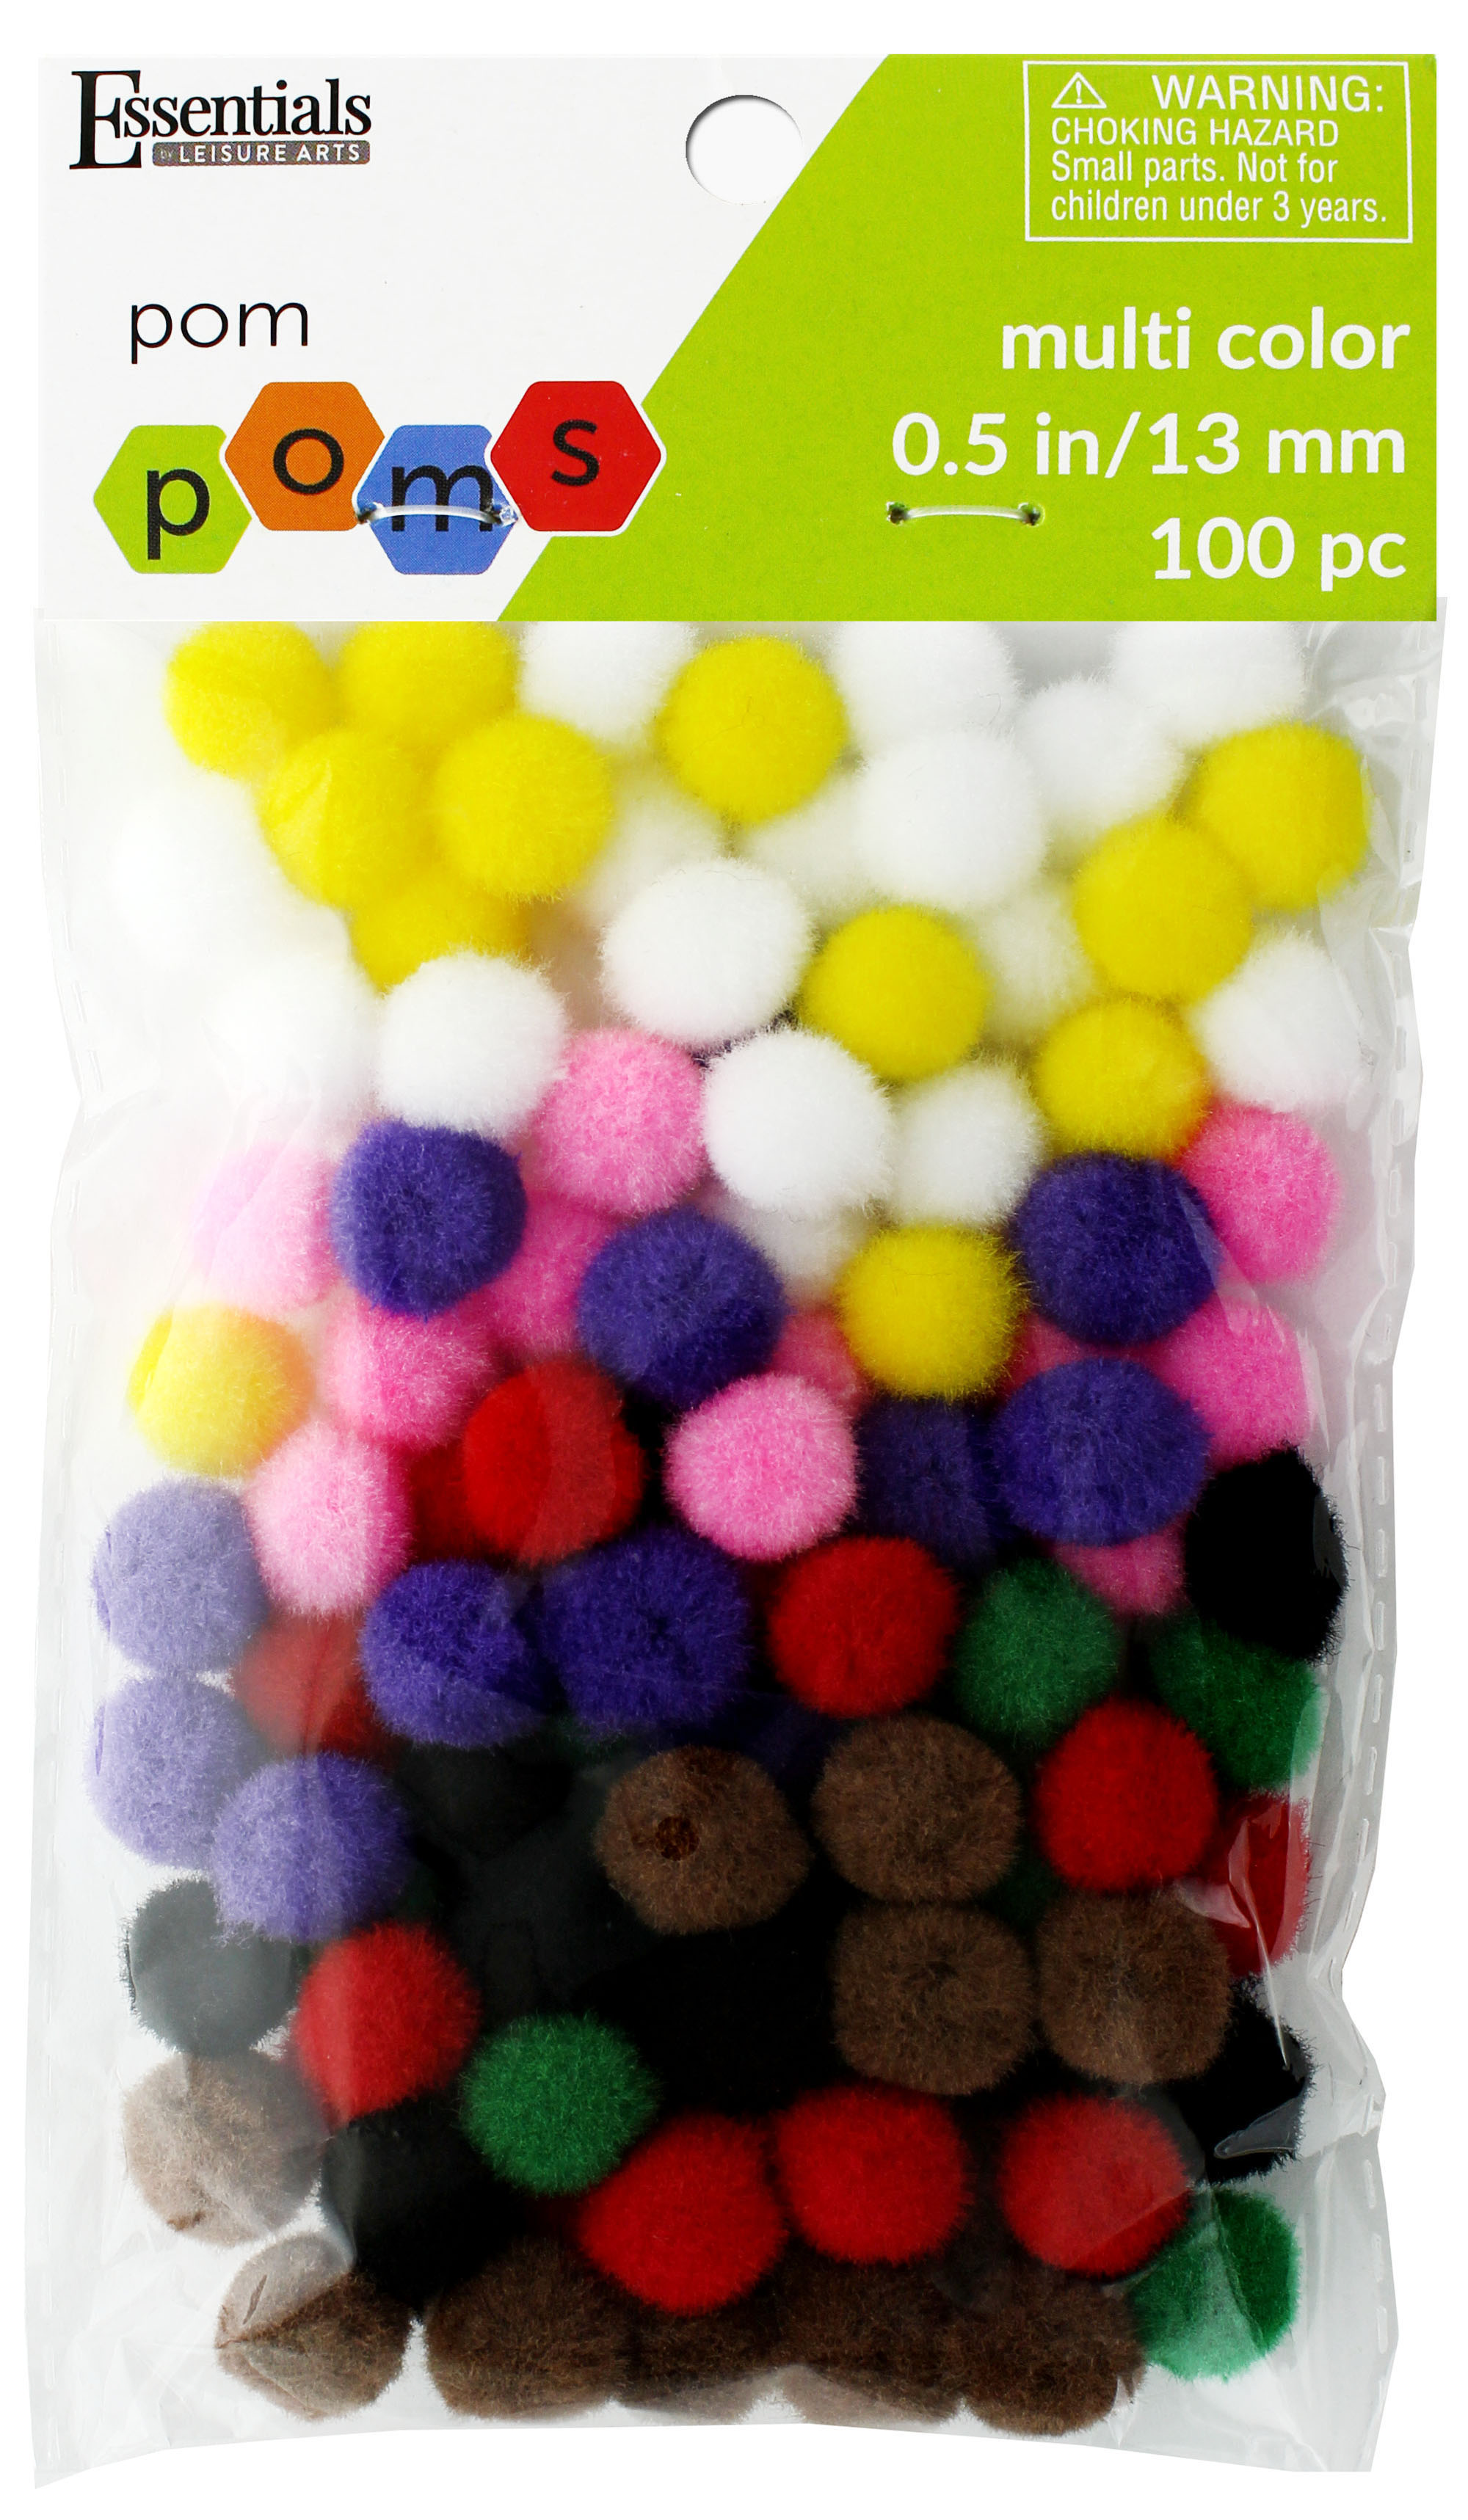 Essentials by Leisure Arts Pom Poms - Glitter Multi-Colored